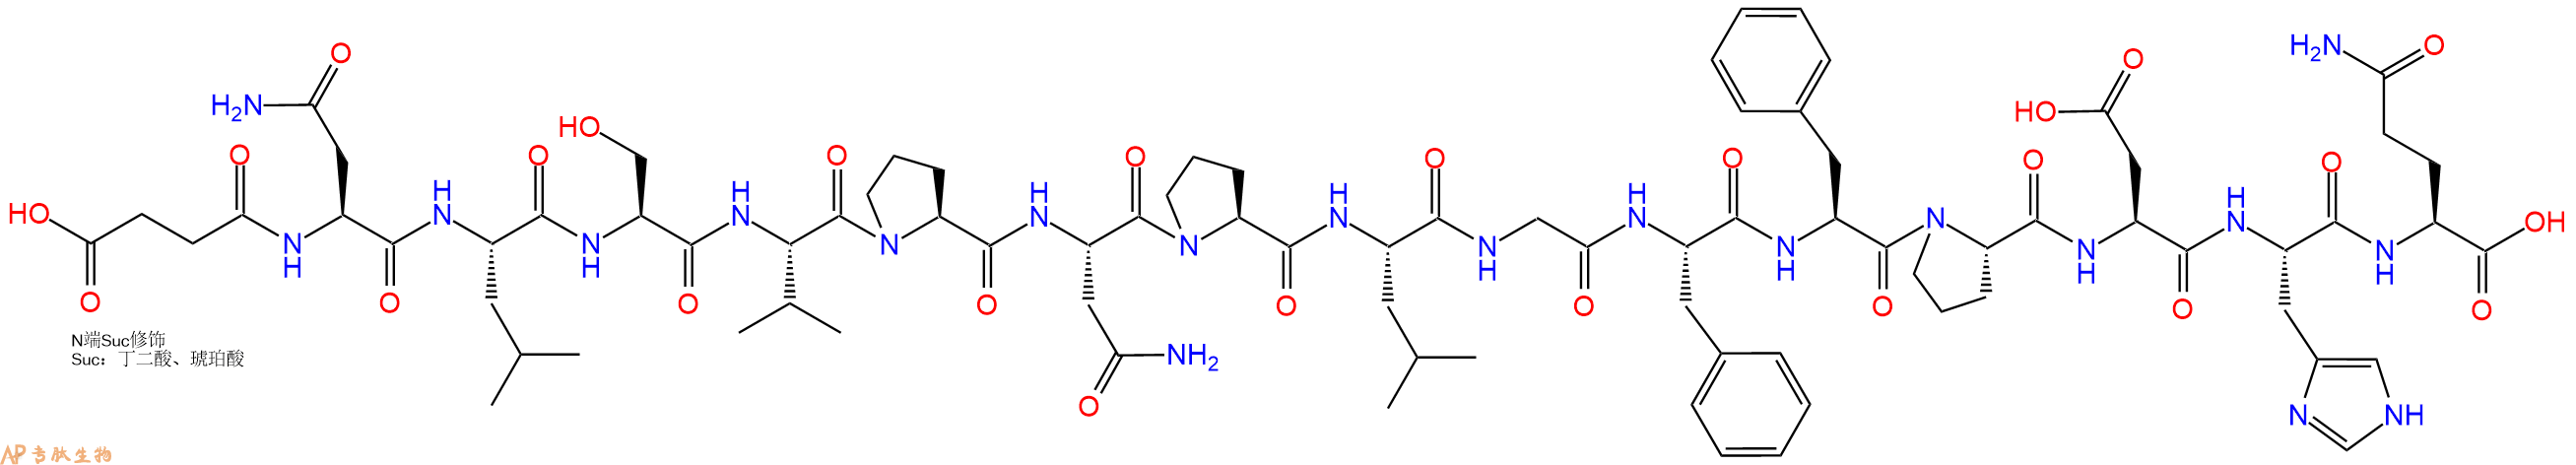 专肽生物产品Suc-Asn-Leu-Ser-Val-Pro-Asn-Pro-Leu-Gly-Phe-Phe-Pr